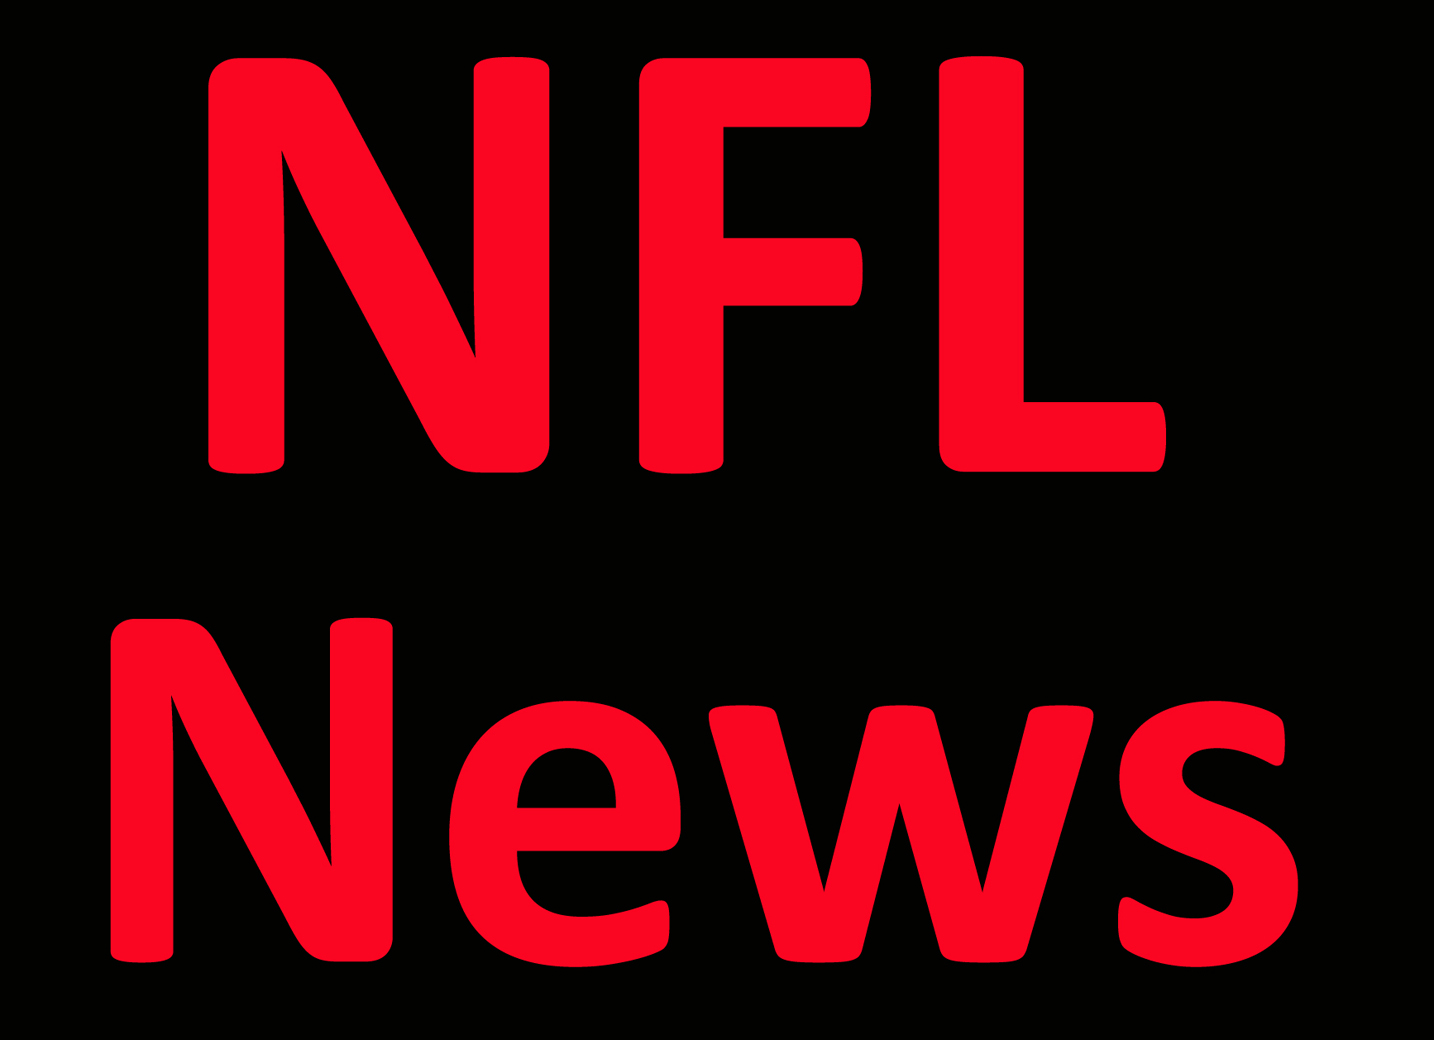 NFL News: Offensive tackle Villanueva retires after 7 seasons Per Report